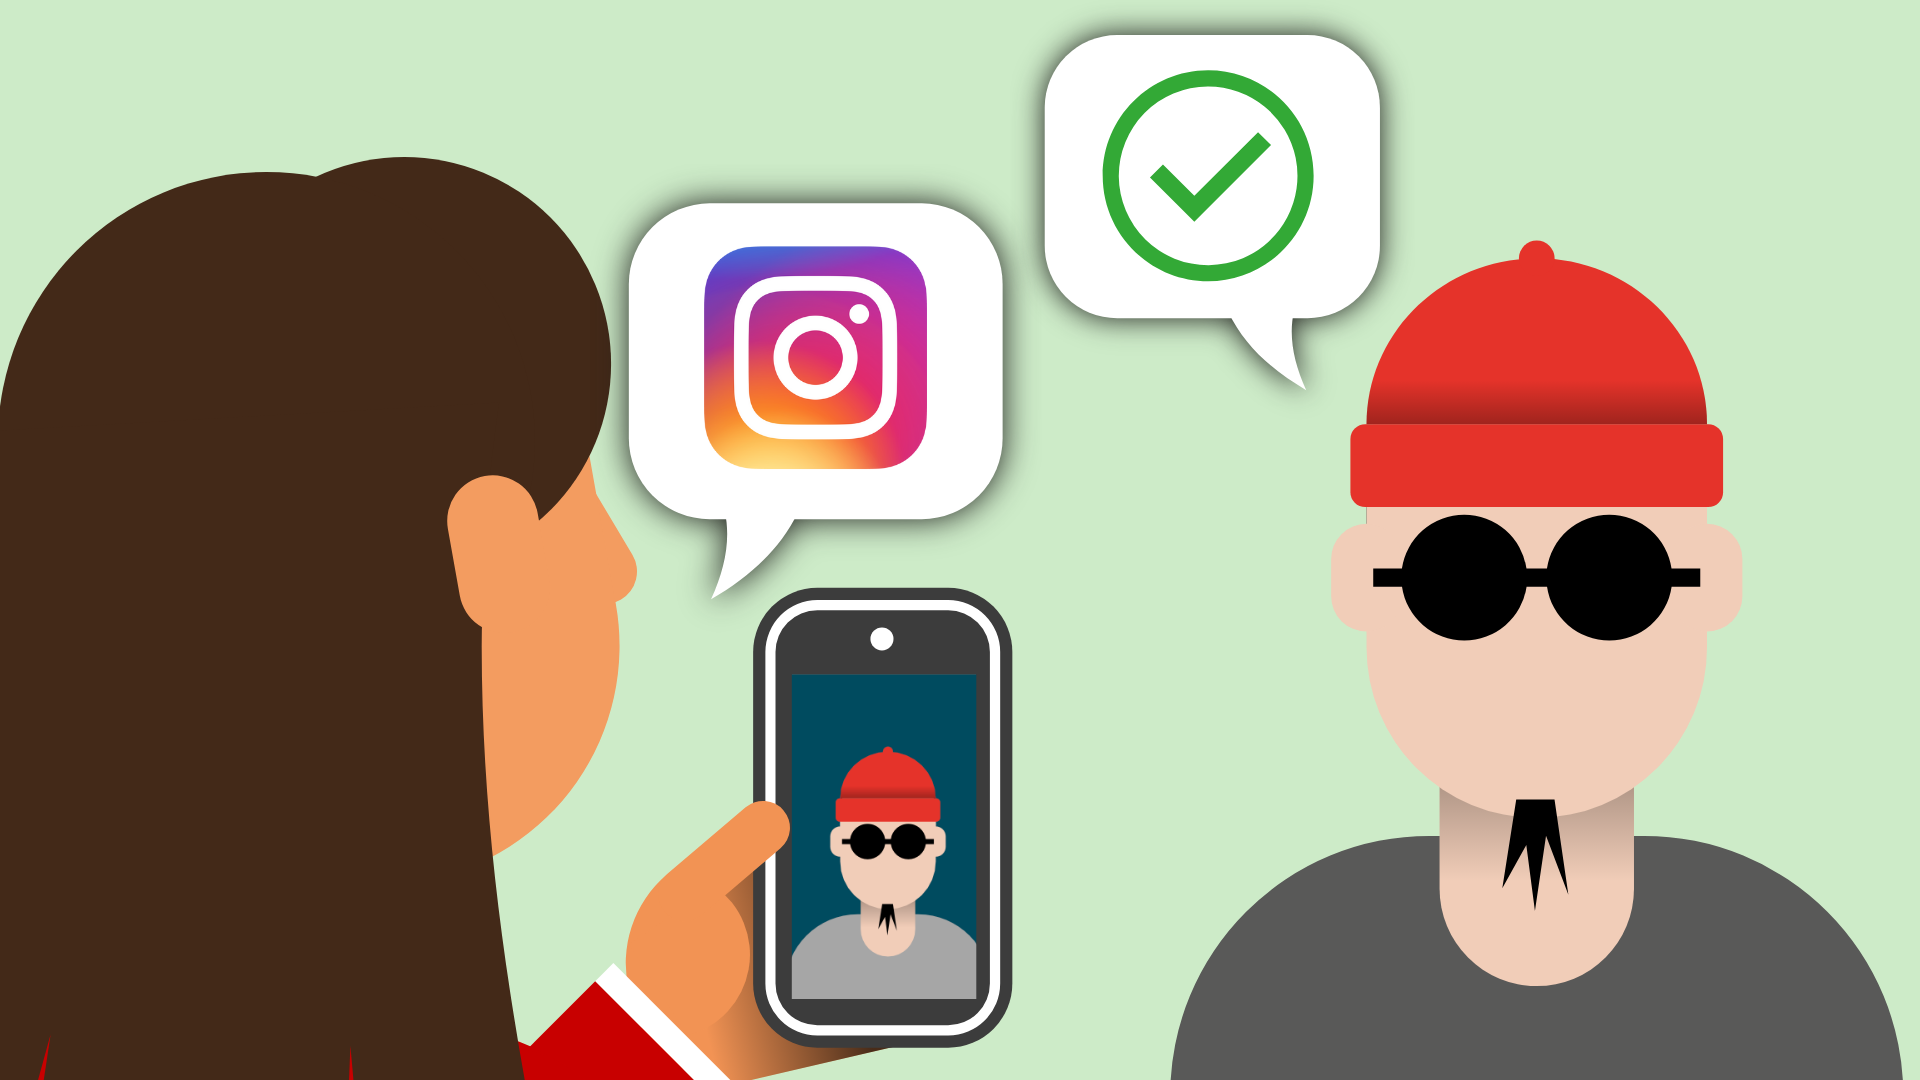  Eine Illustration zeigt eine Person, die ein Smartphone betrachtet, auf dem ein Mann mit roter Mütze abgebildet ist, der identische Mann steht neben dem Handy. Über dem Handy sind Sprechblasen mit einem Instagram-Logo und einem grünen Häkchen zu sehen.